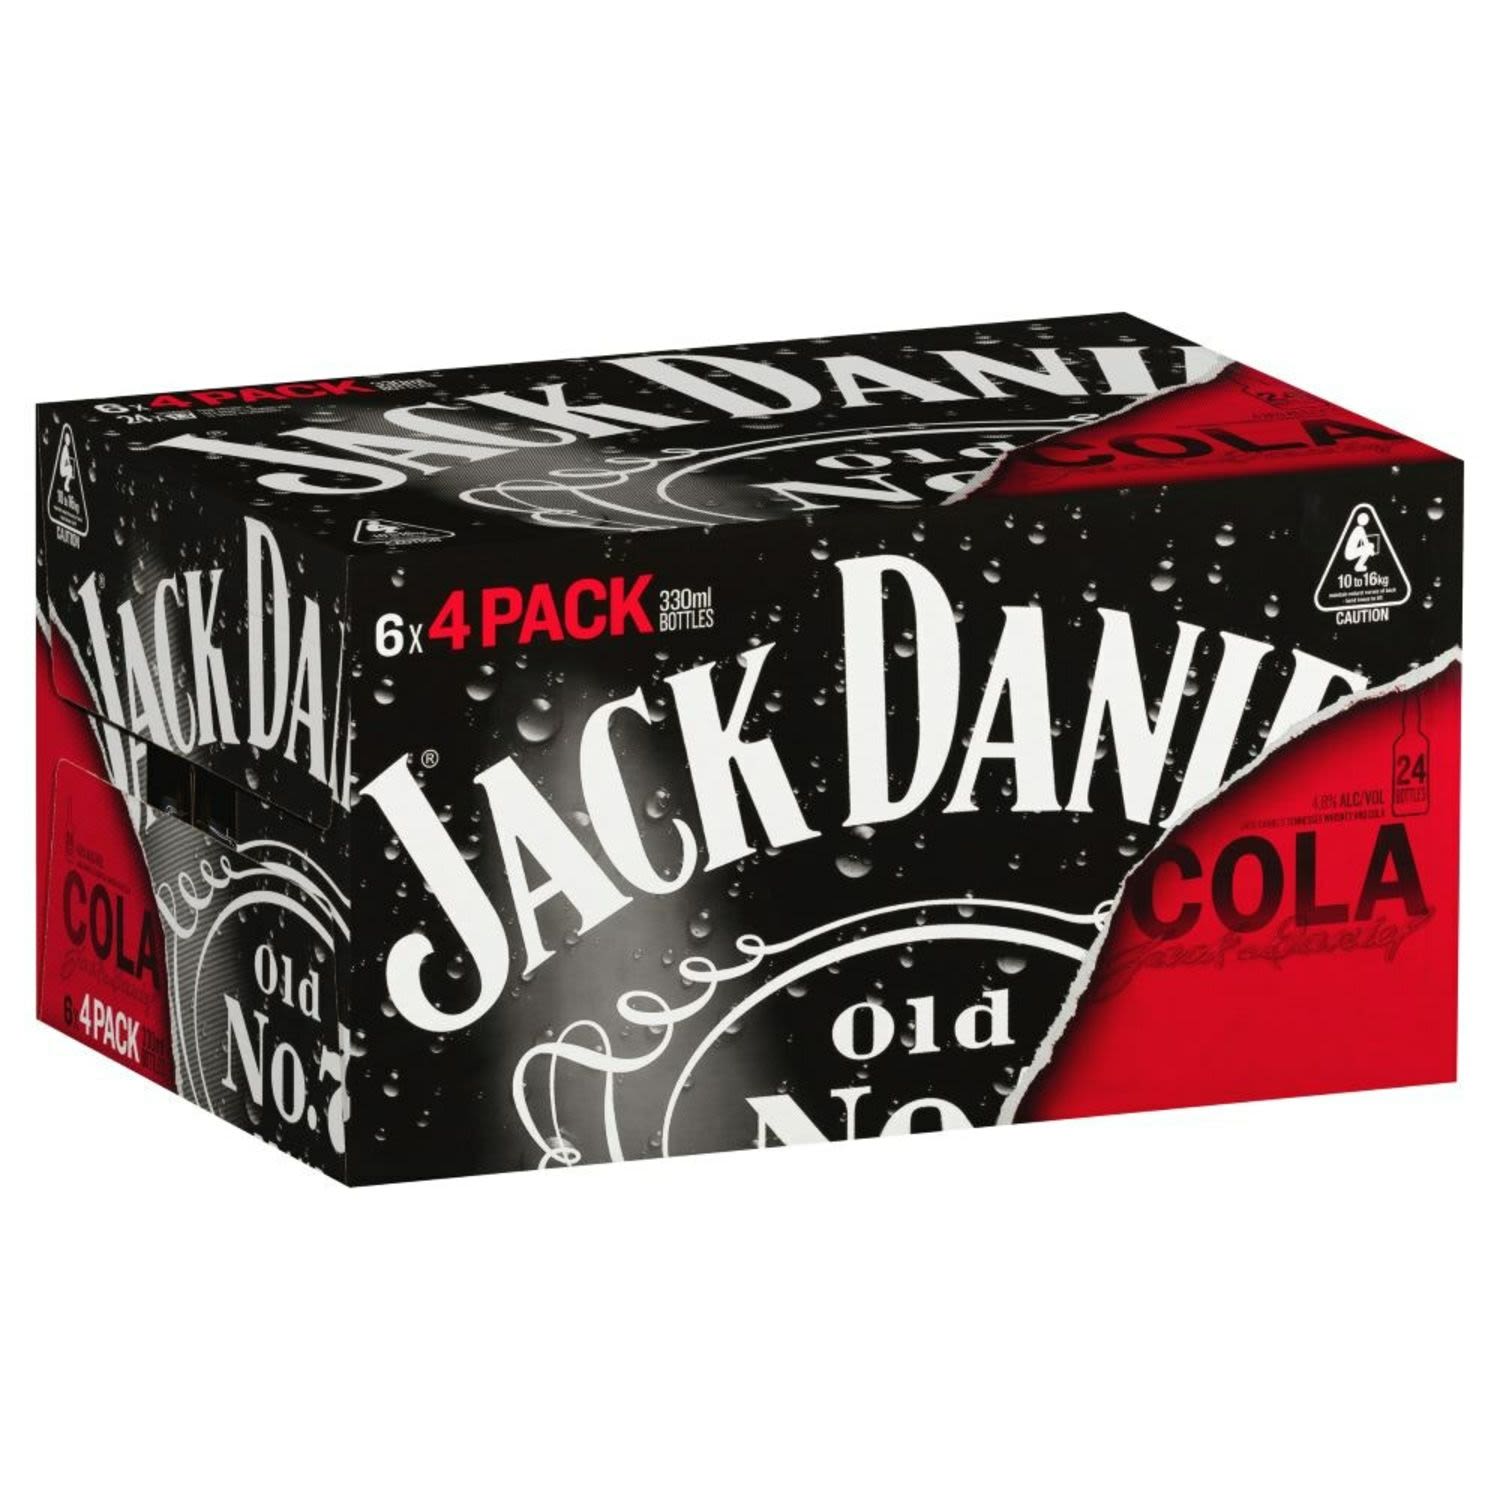 Jack Daniel's & Cola Bottle 330mL<br /> <br />Alcohol Volume: 4.80%<br /><br />Pack Format: 24 Pack<br /><br />Standard Drinks: 1.2<br /><br />Pack Type: Bottle<br />